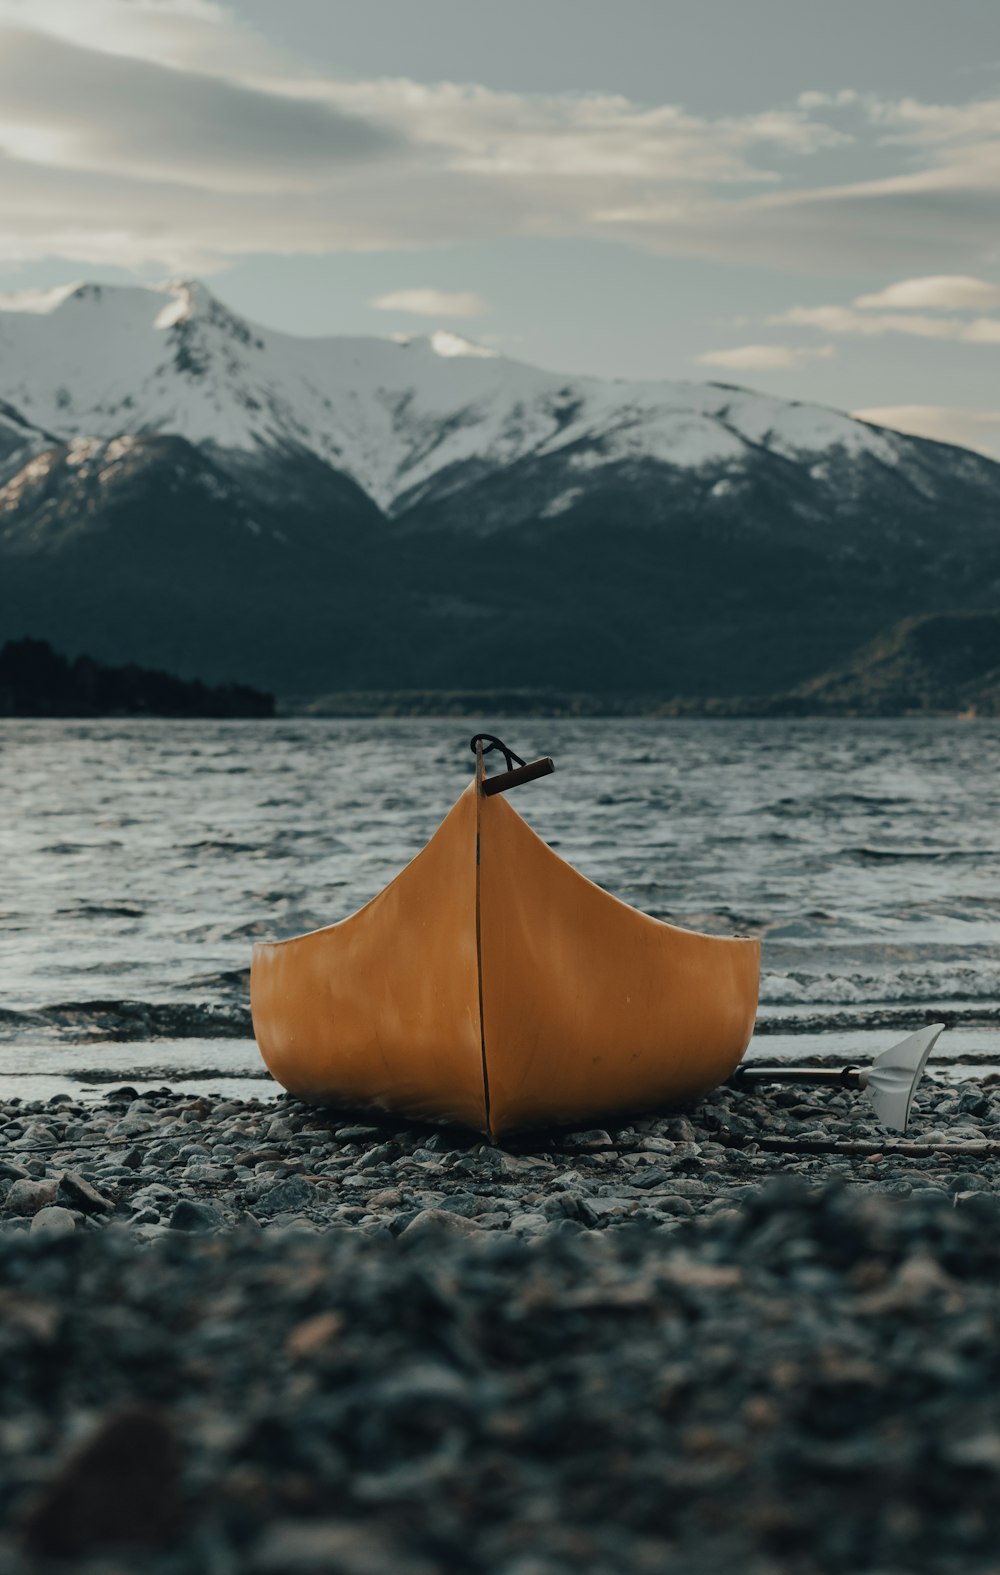 orange kayak on gray sand near body of water during daytime